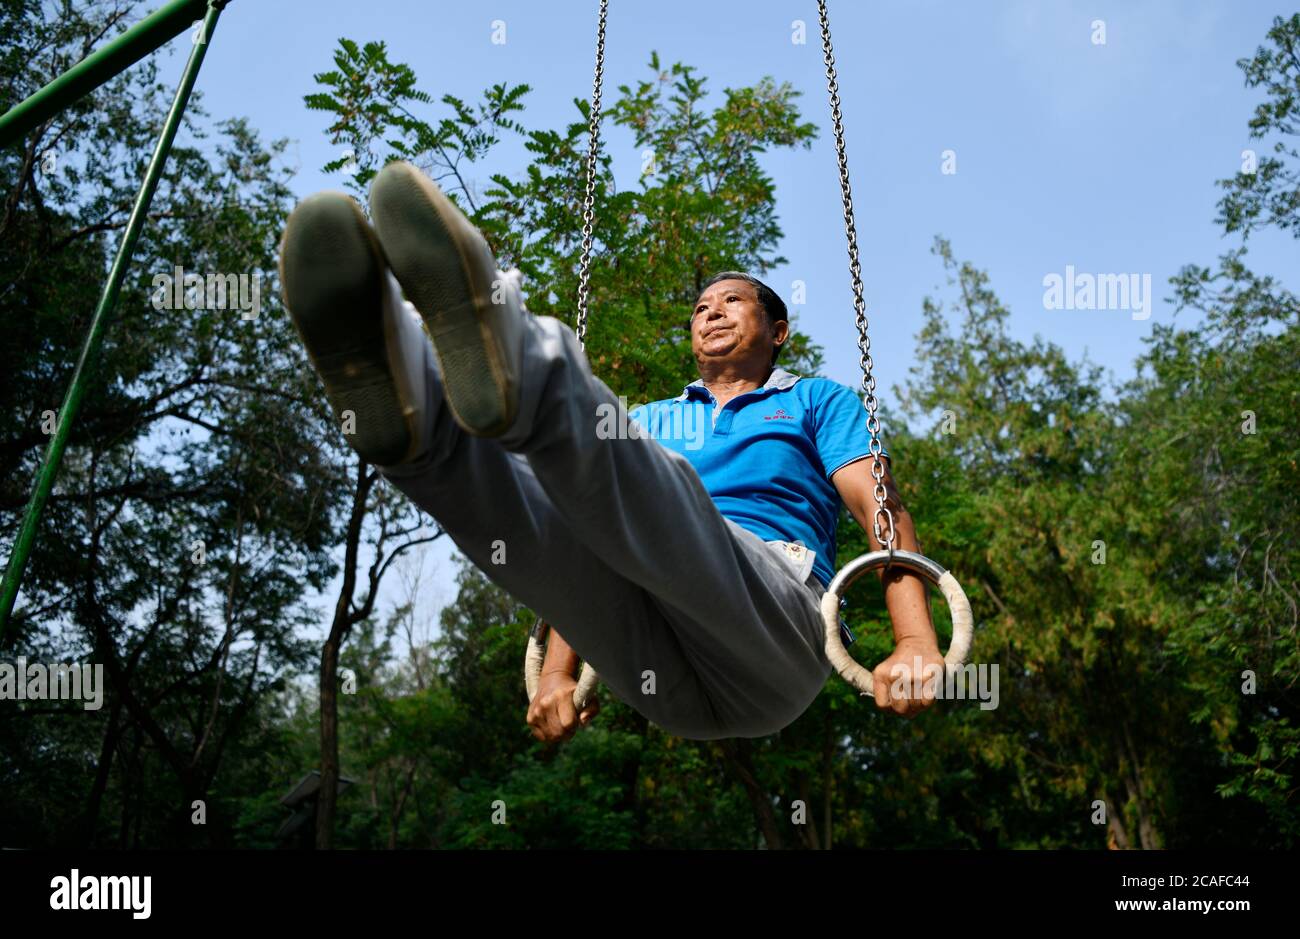 (200807) -- BEIJING, 7 août 2020 (Xinhua) -- du Qiuwang, 69 ans, pratique la gymnastique au parc Xigu, dans le nord de la Chine, Tianjin, 4 août 2020. Un groupe de personnes âgées a formé une équipe de gymnastique à Tianjin il y a dix ans. Ils ont pratiqué régulièrement comme exercice physique quotidien. L'équipe compte maintenant plus de 20 membres, avec une moyenne d'âge de 68 ans. « l'exercice nous permet de maintenir un bon état physique, ce qui est très utile pour améliorer la qualité de vie. » a déclaré Tong Yugen, le chef d'équipe âgé de 66 ans. Au fur et à mesure que l'équipe devient plus connue, plus de 100 amateurs de fitness les ont rejoints dans l'exercice quotidien. Banque D'Images